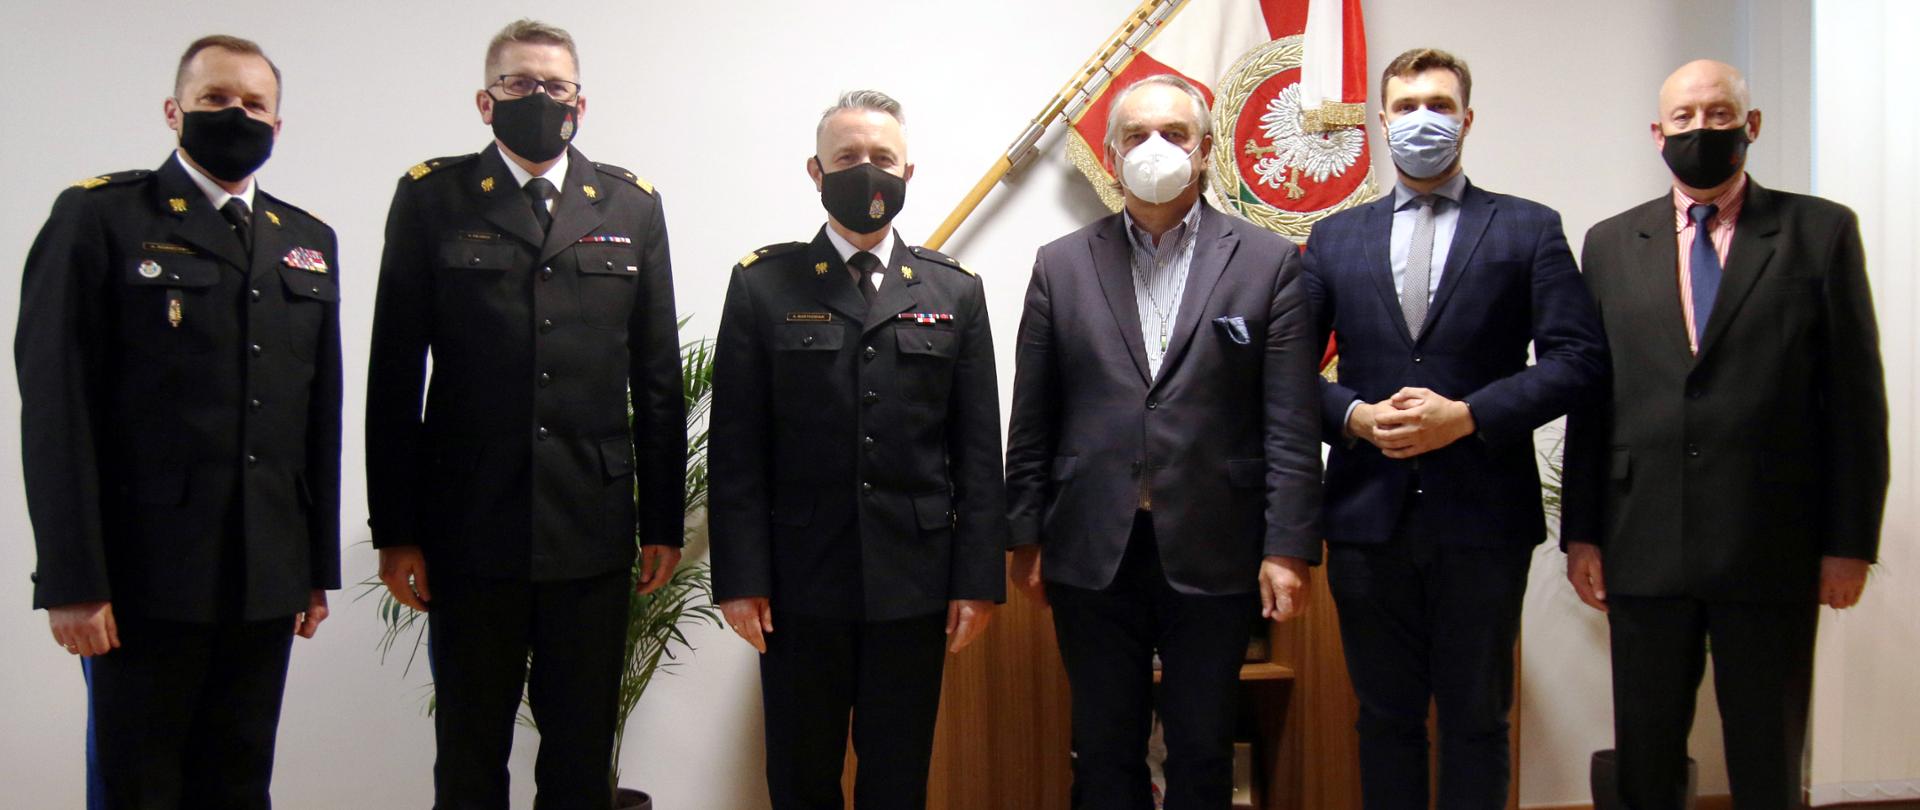 Na zdjęciu komendant główny PSP i jego dwaj zastępcy oraz trzech przedstawicieli Zarządu Głównego OSP RP. Zdjęcie wykonane na tle Sztandaru. Wszyscy uczestnicy są w maseczkach.